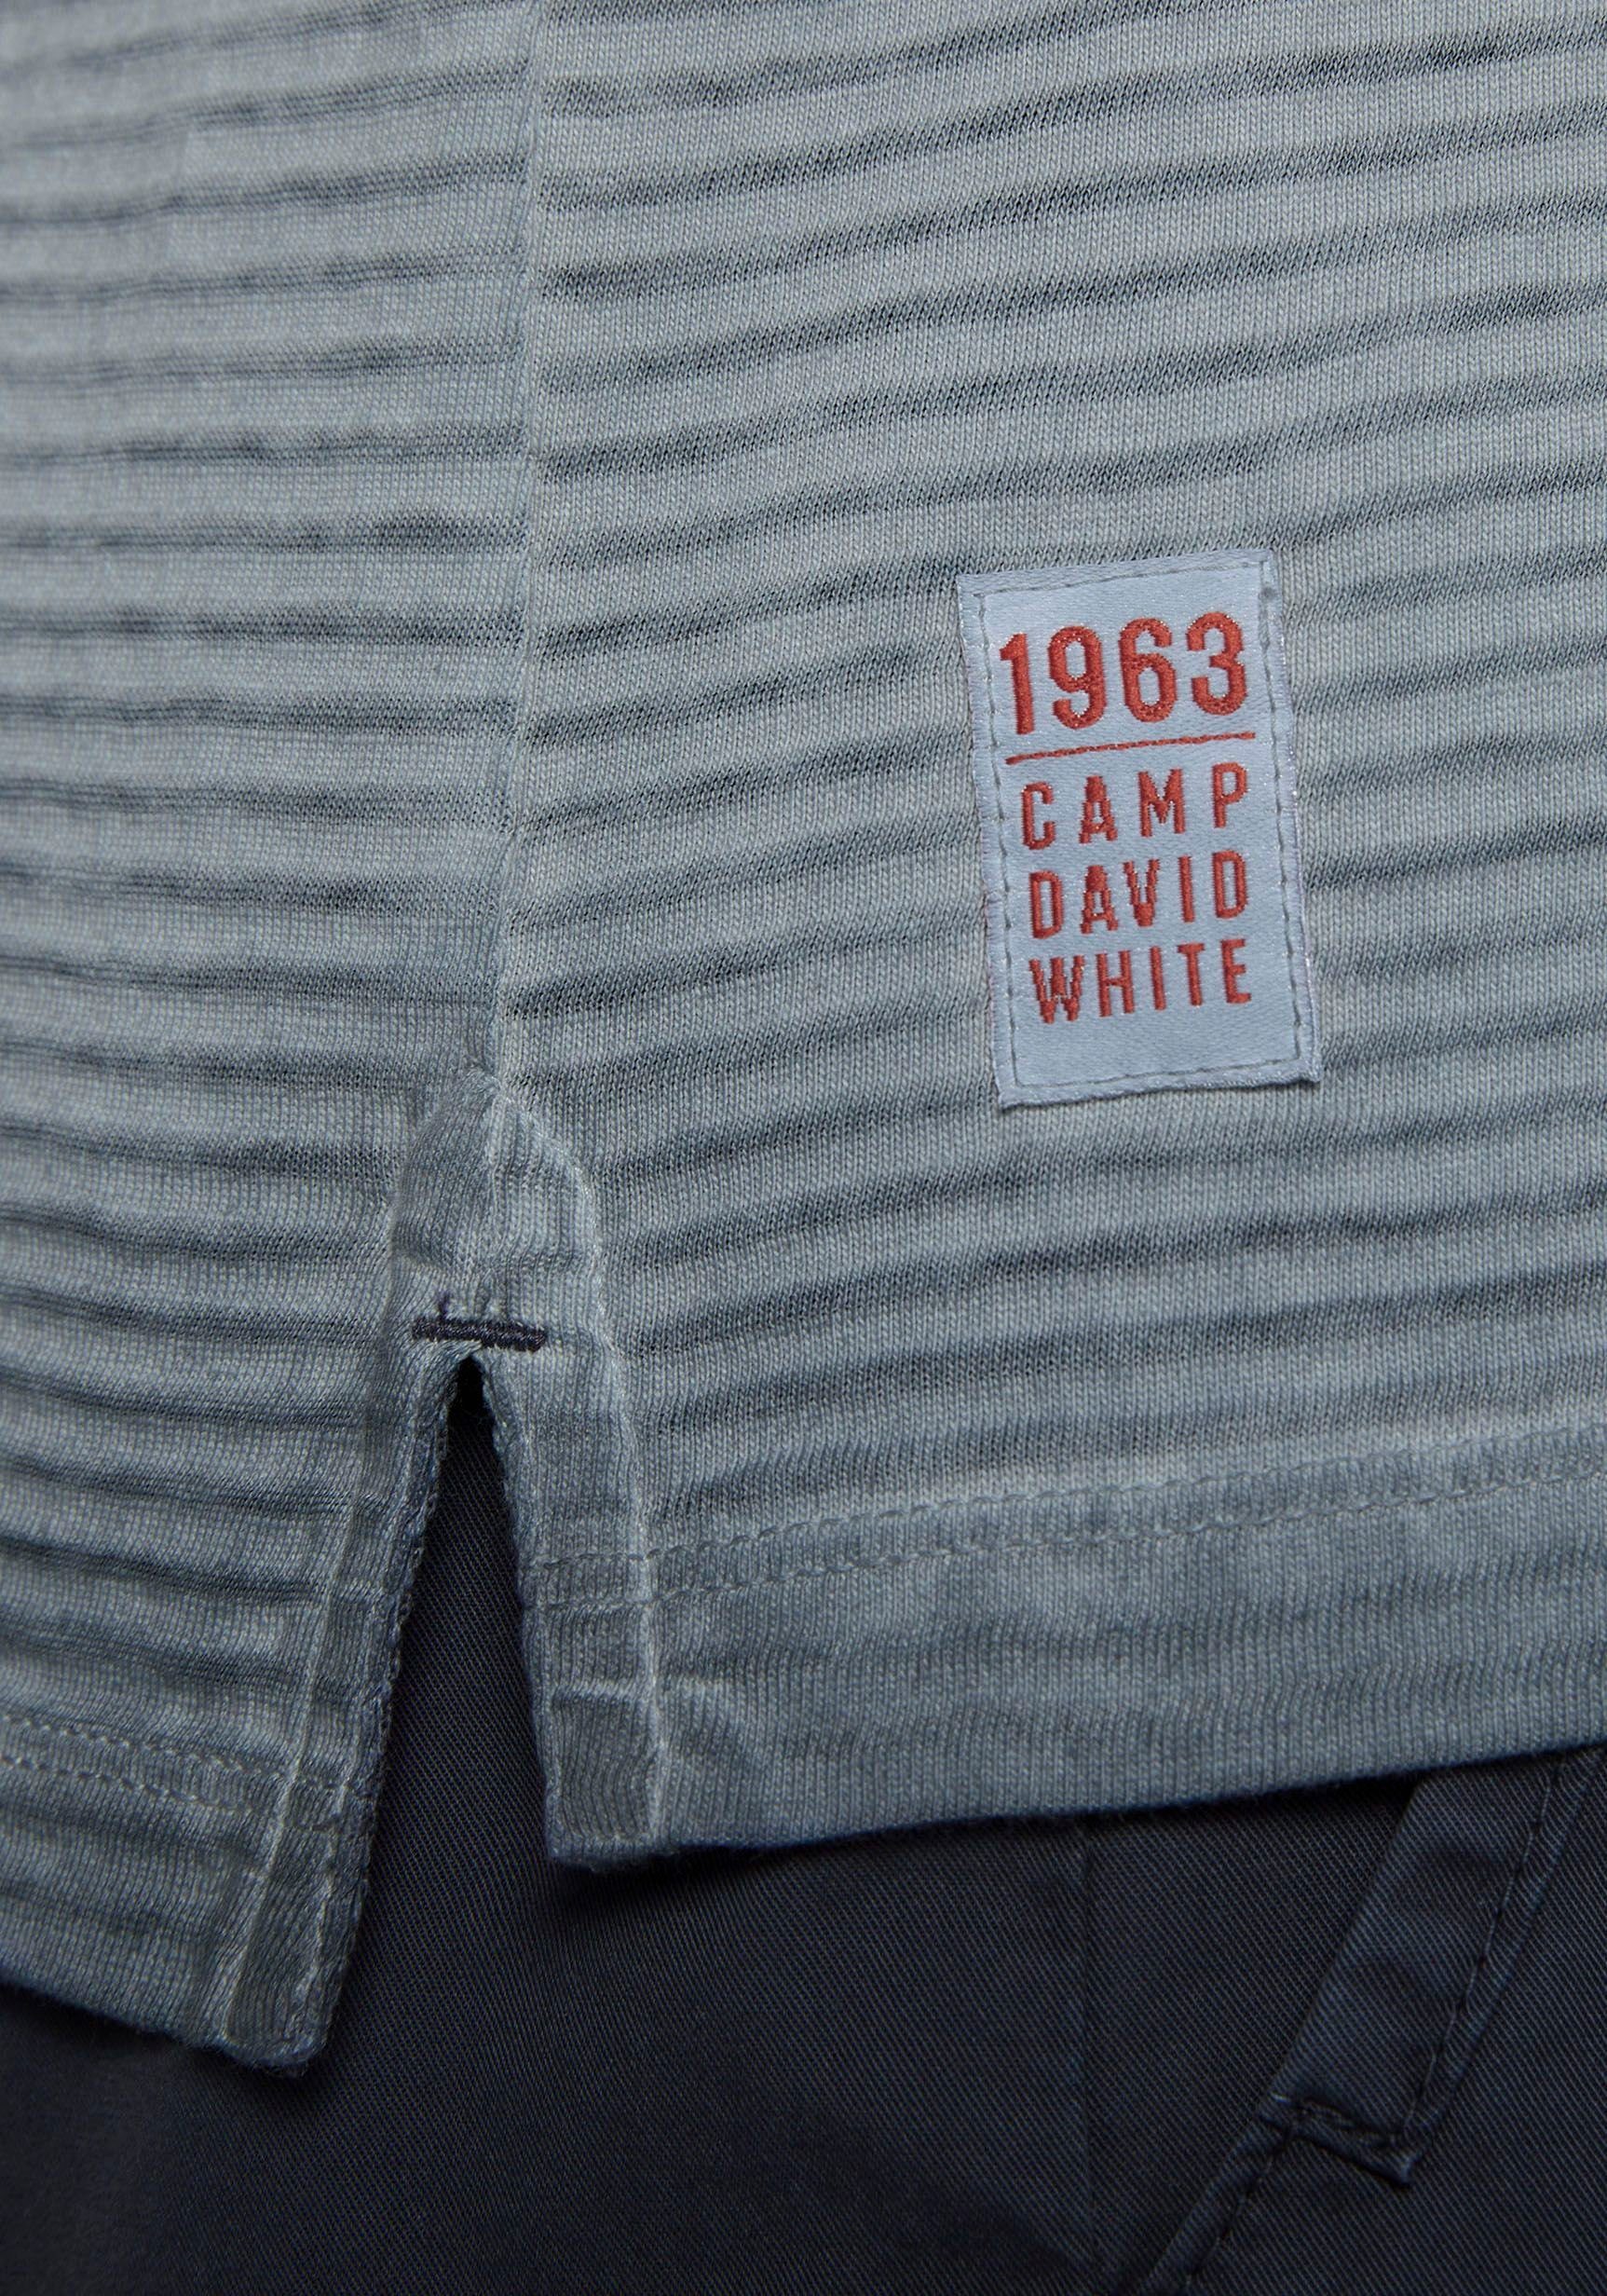 Stickerei grey Poloshirt CAMP mit DAVID concrete